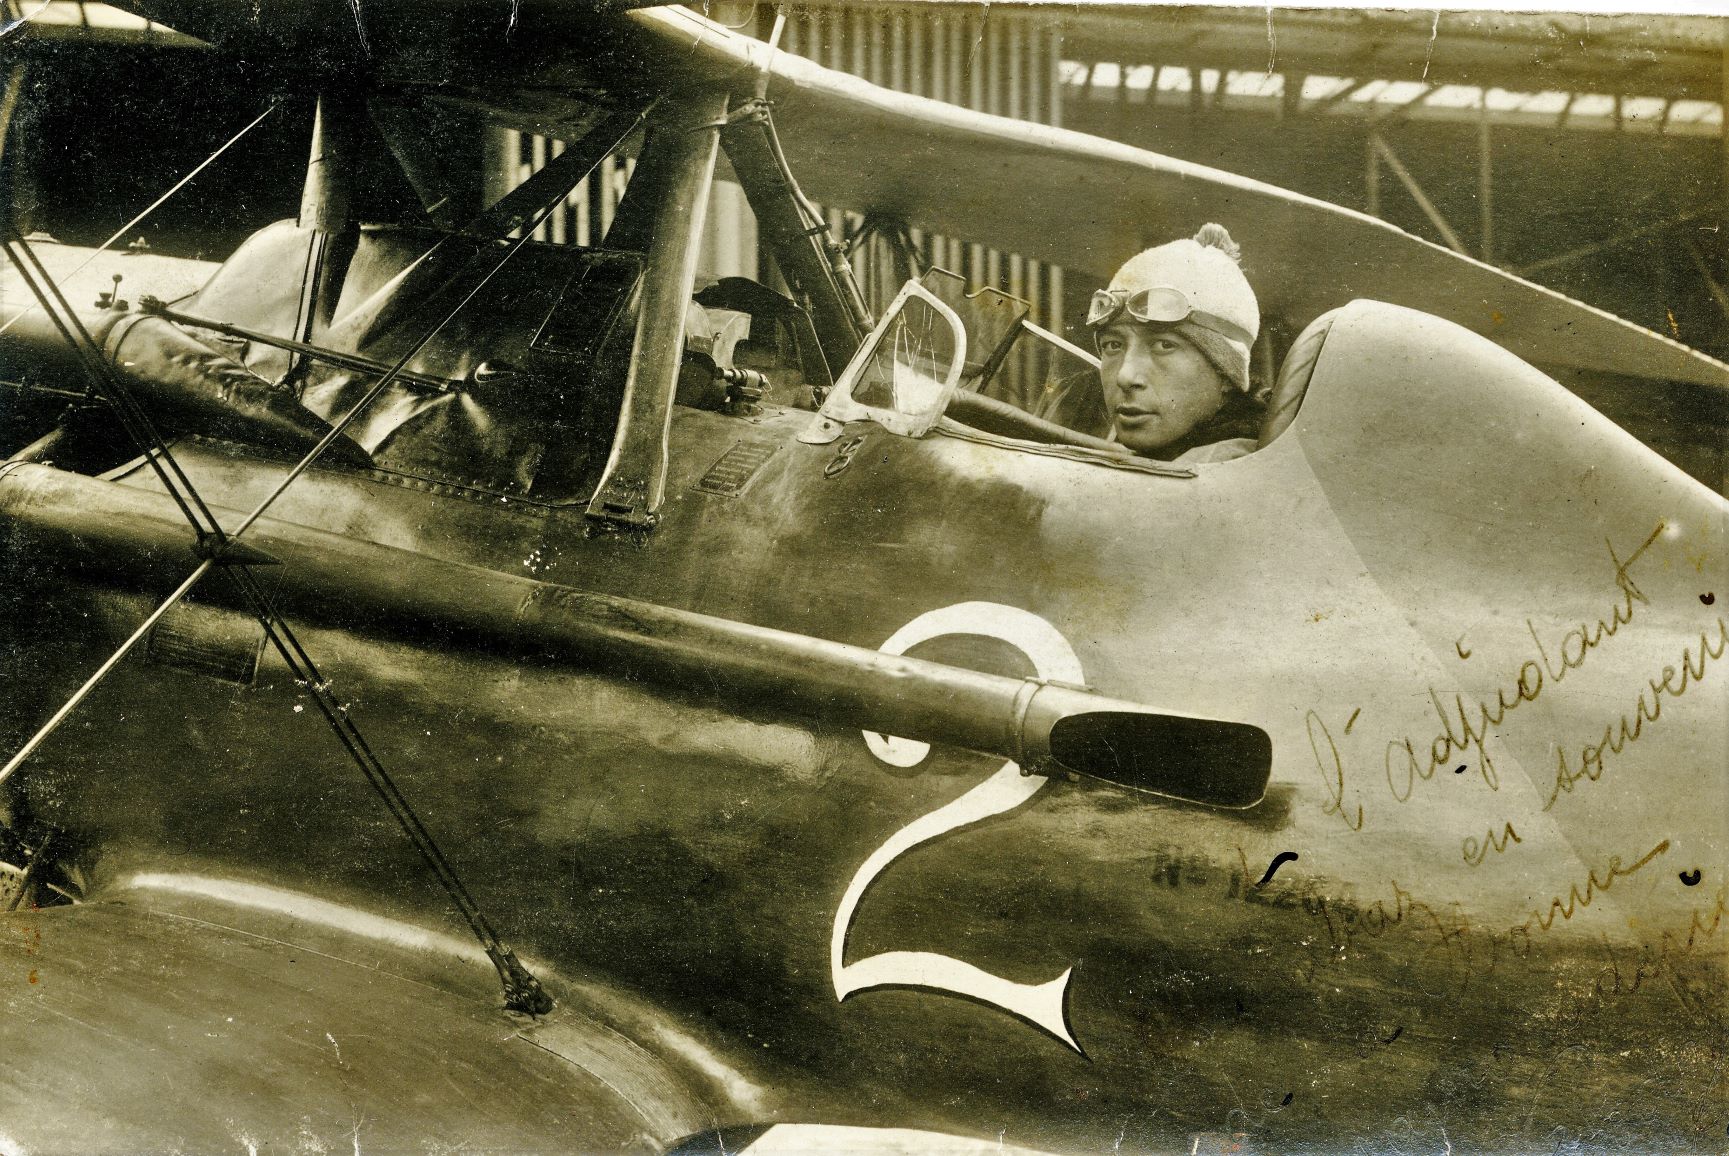 Copie 569 Nieuport Delage 29.jpg